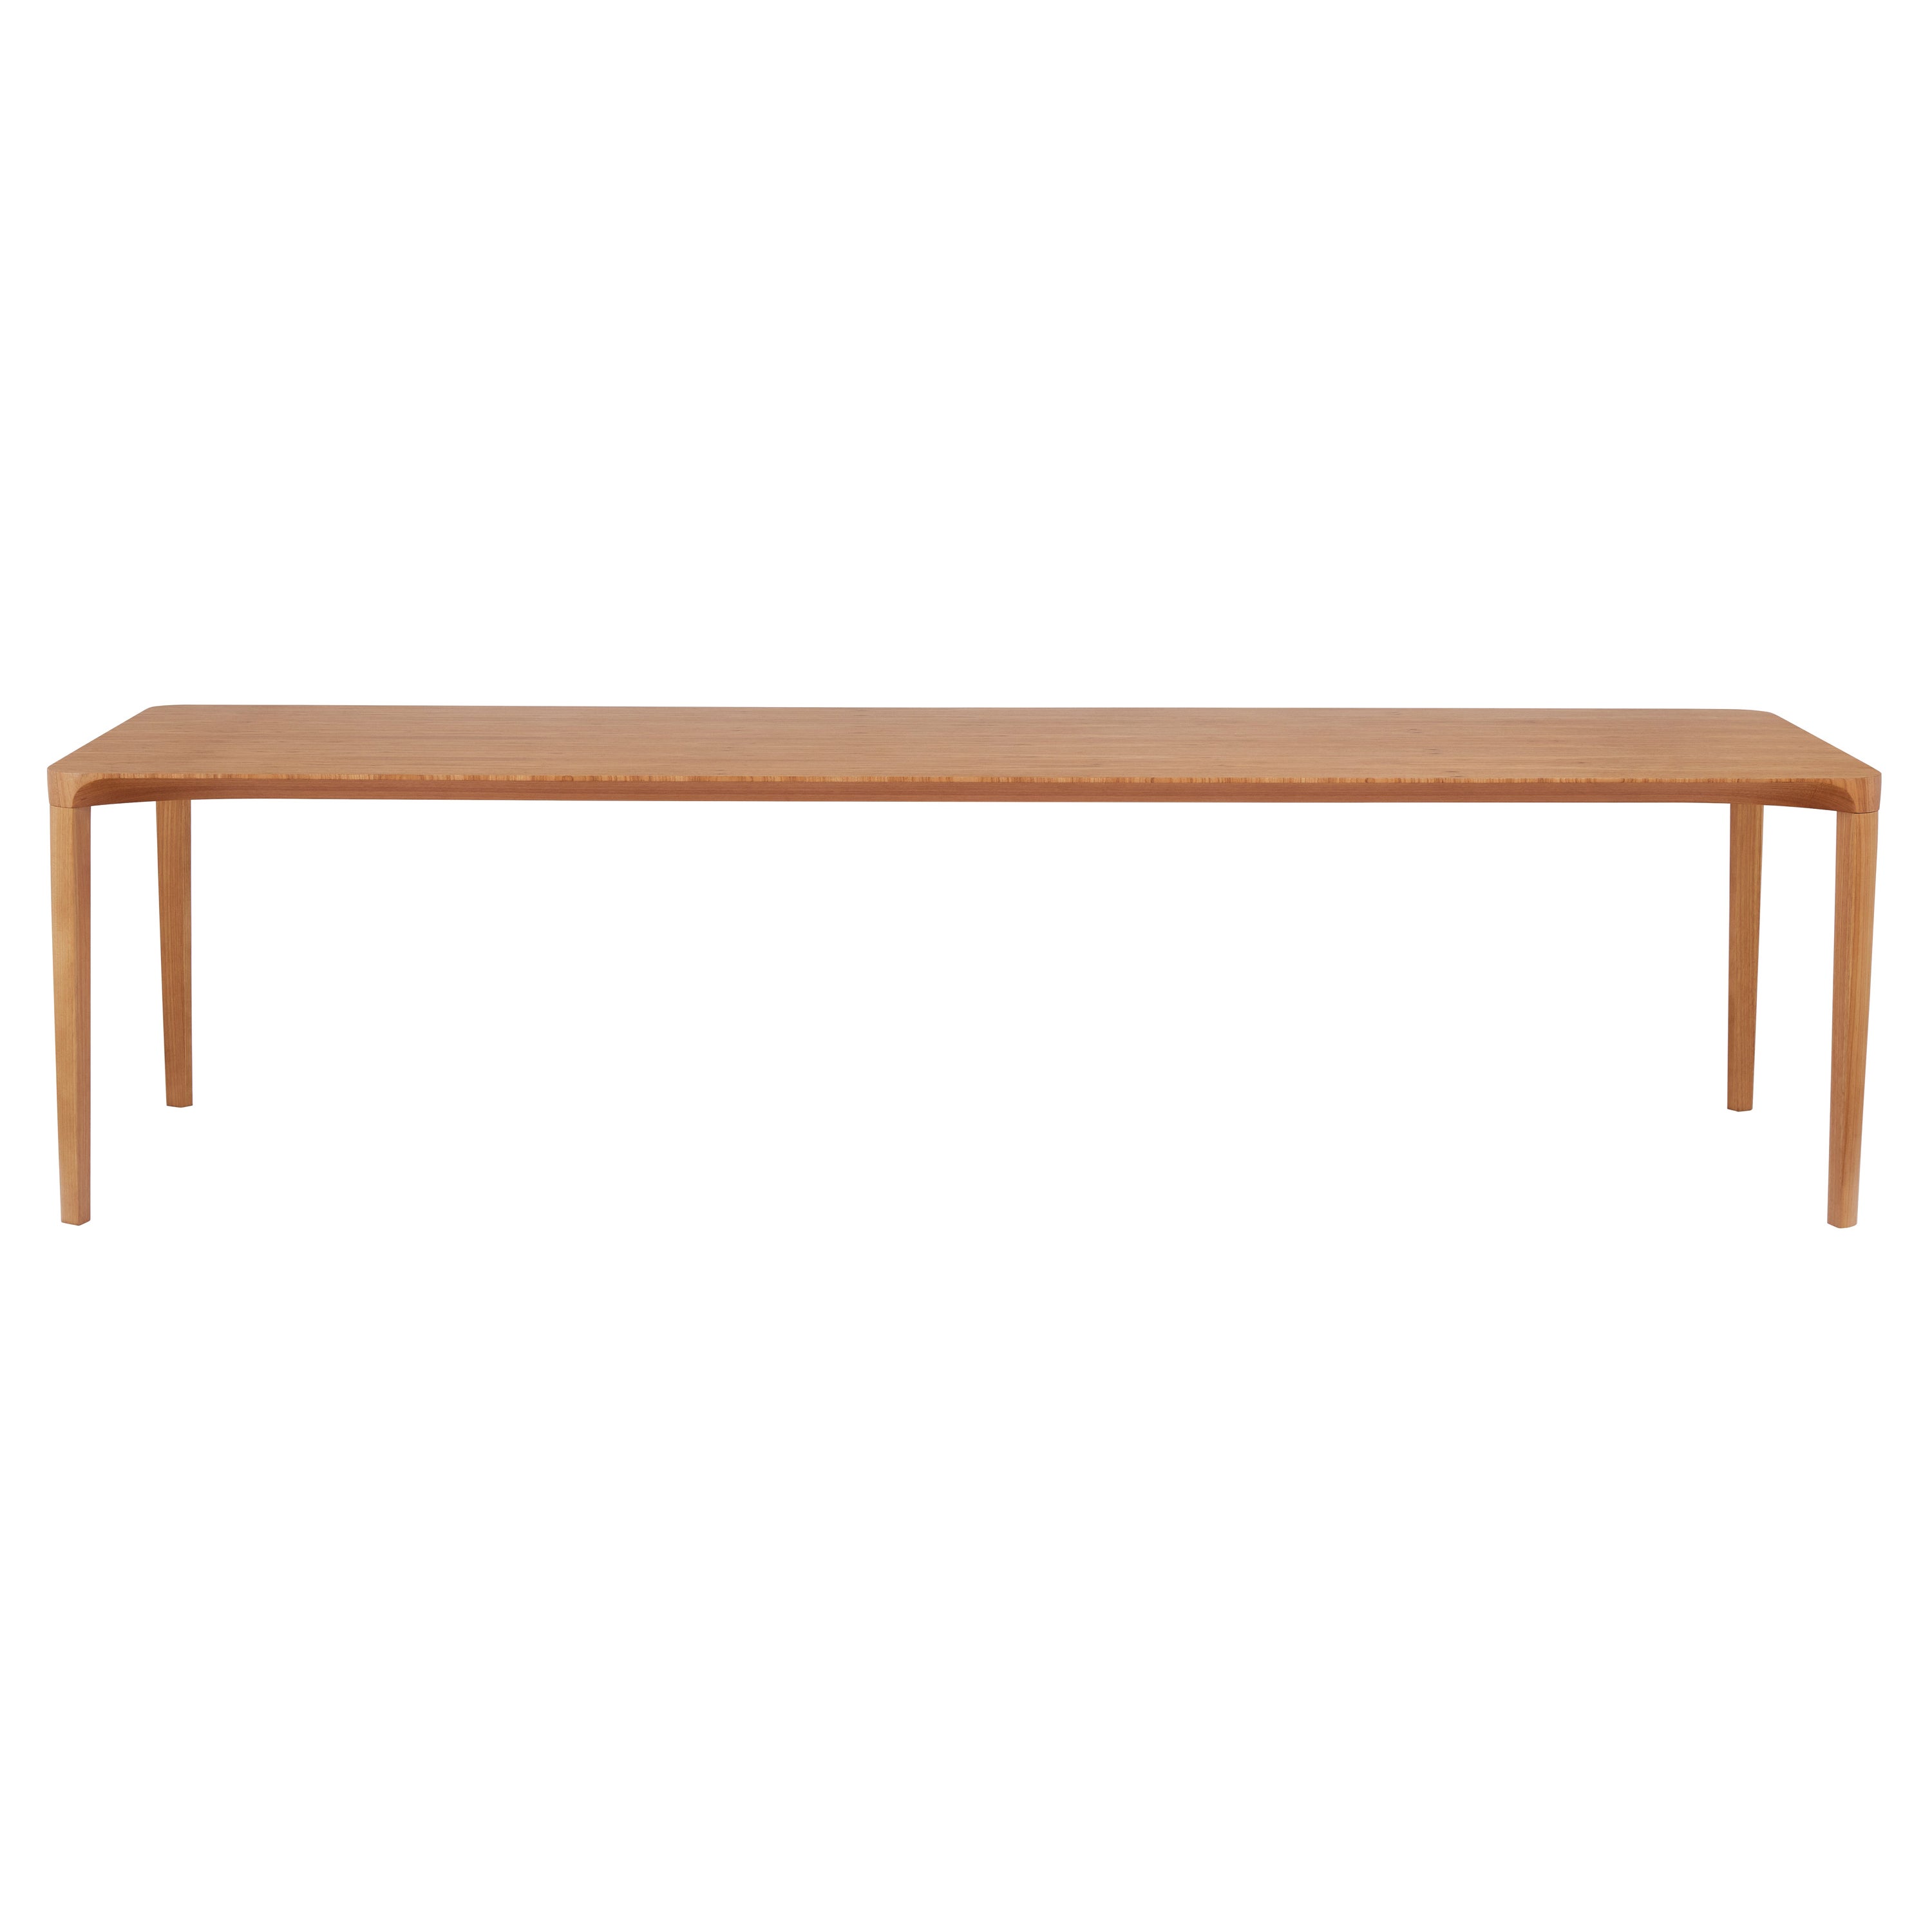 Minimalistischer Esstisch im minimalistischen Stil aus natürlichem Massivholz, verstärkt mit Stahl